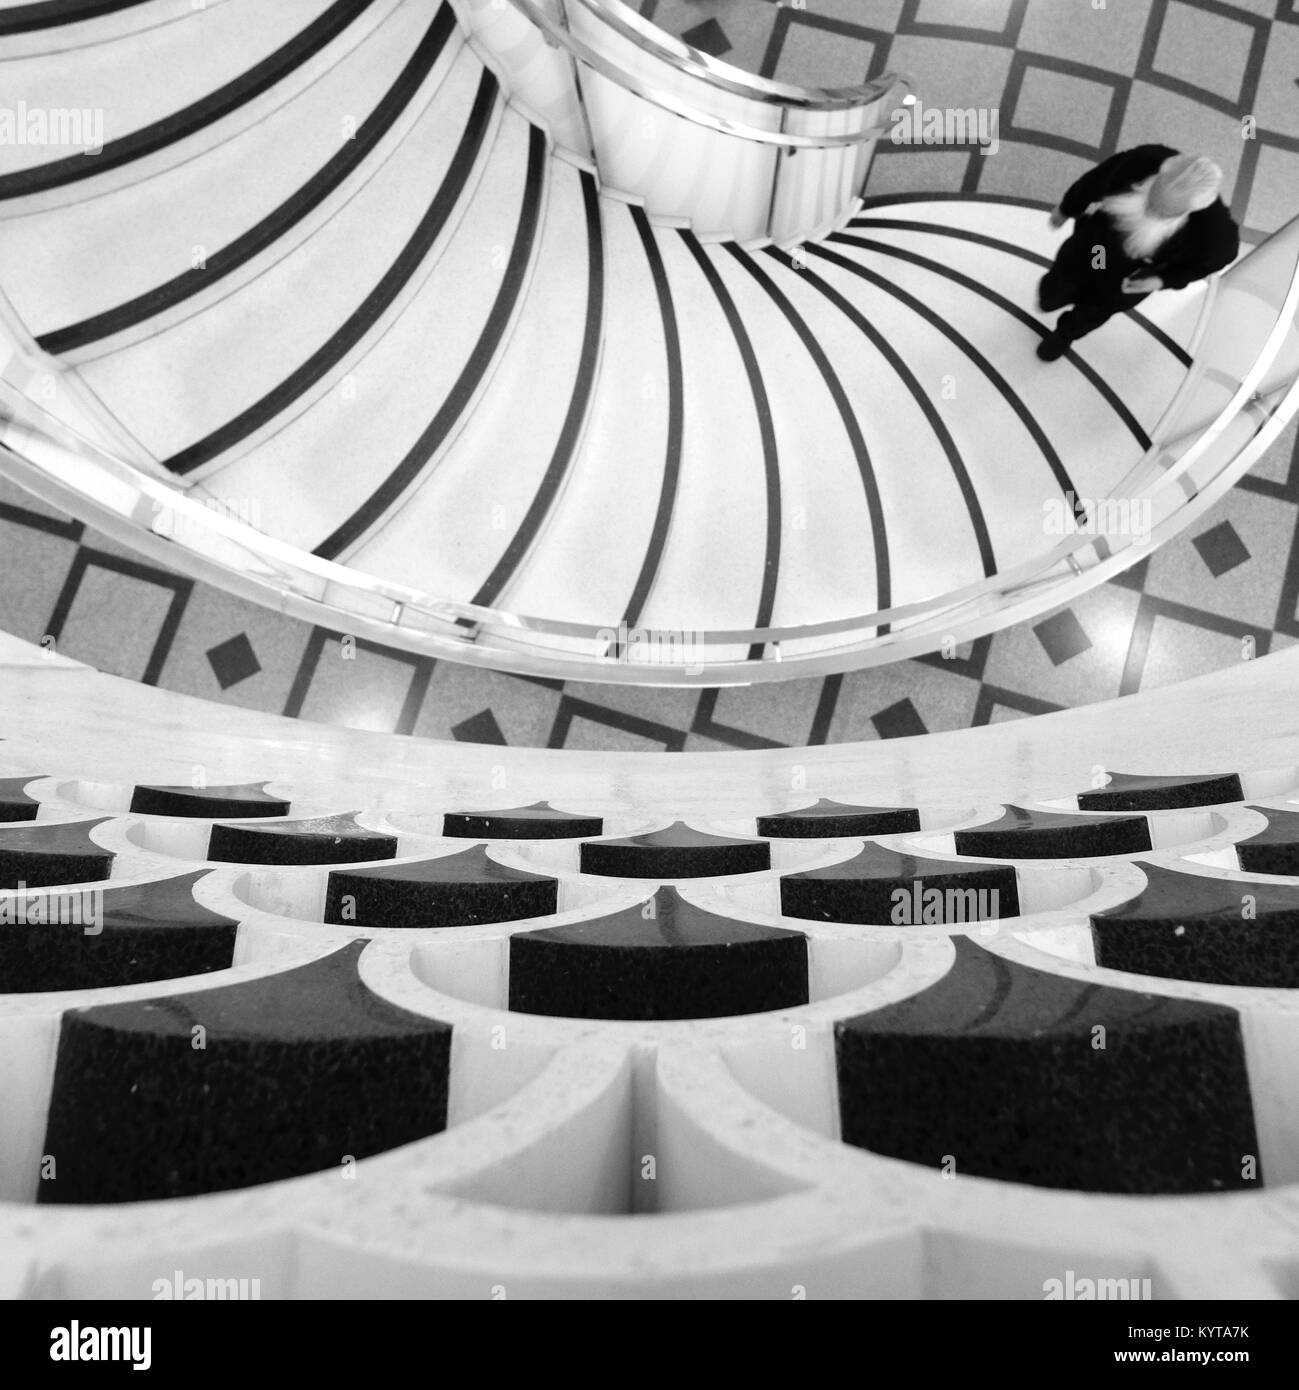 Detailansicht der Wendeltreppe in der Tate Britain Kunstgalerie in London UK mit bärtigen Mann uo die Treppe. In schwarzweiß fotografiert. Stockfoto